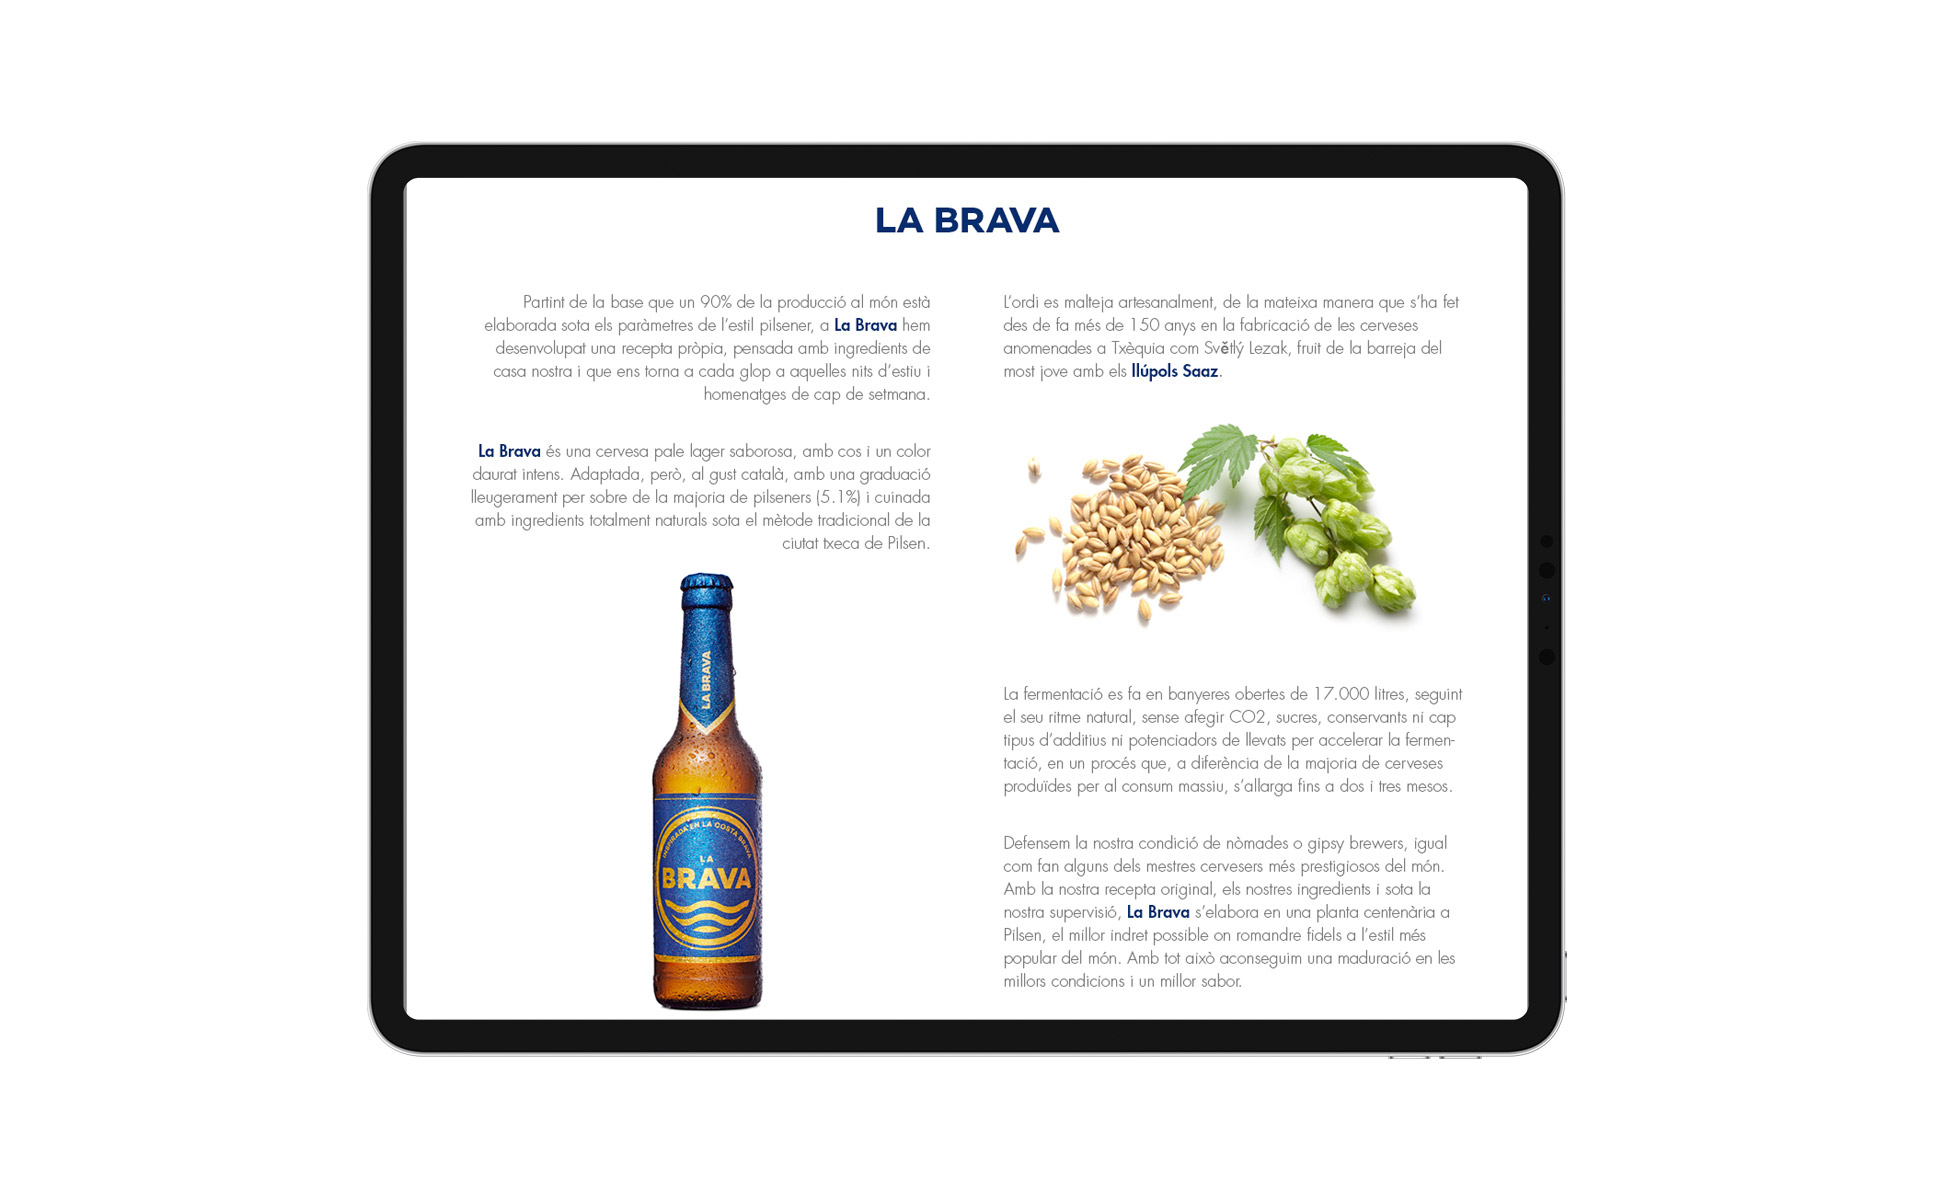 La Brava website about page